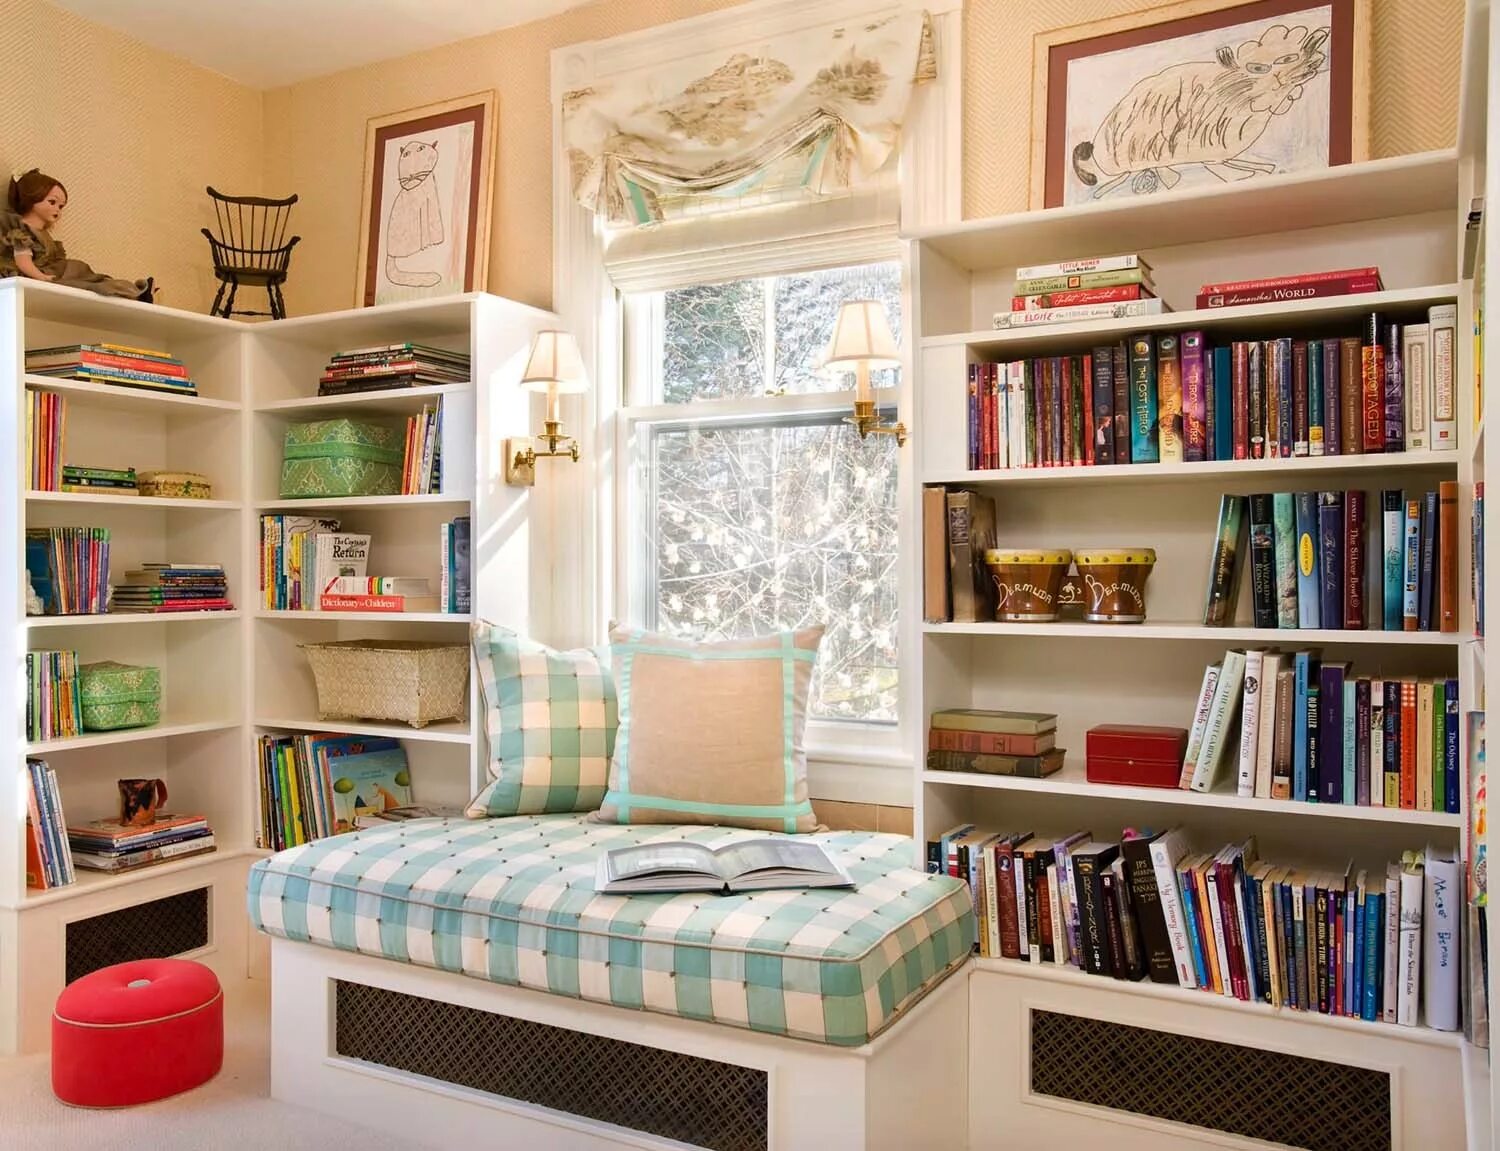 Комната с книжными полками. Комната с книжным шкафом. Уютная комната с книжными полками. Книжный стеллаж в маленькой комнате.